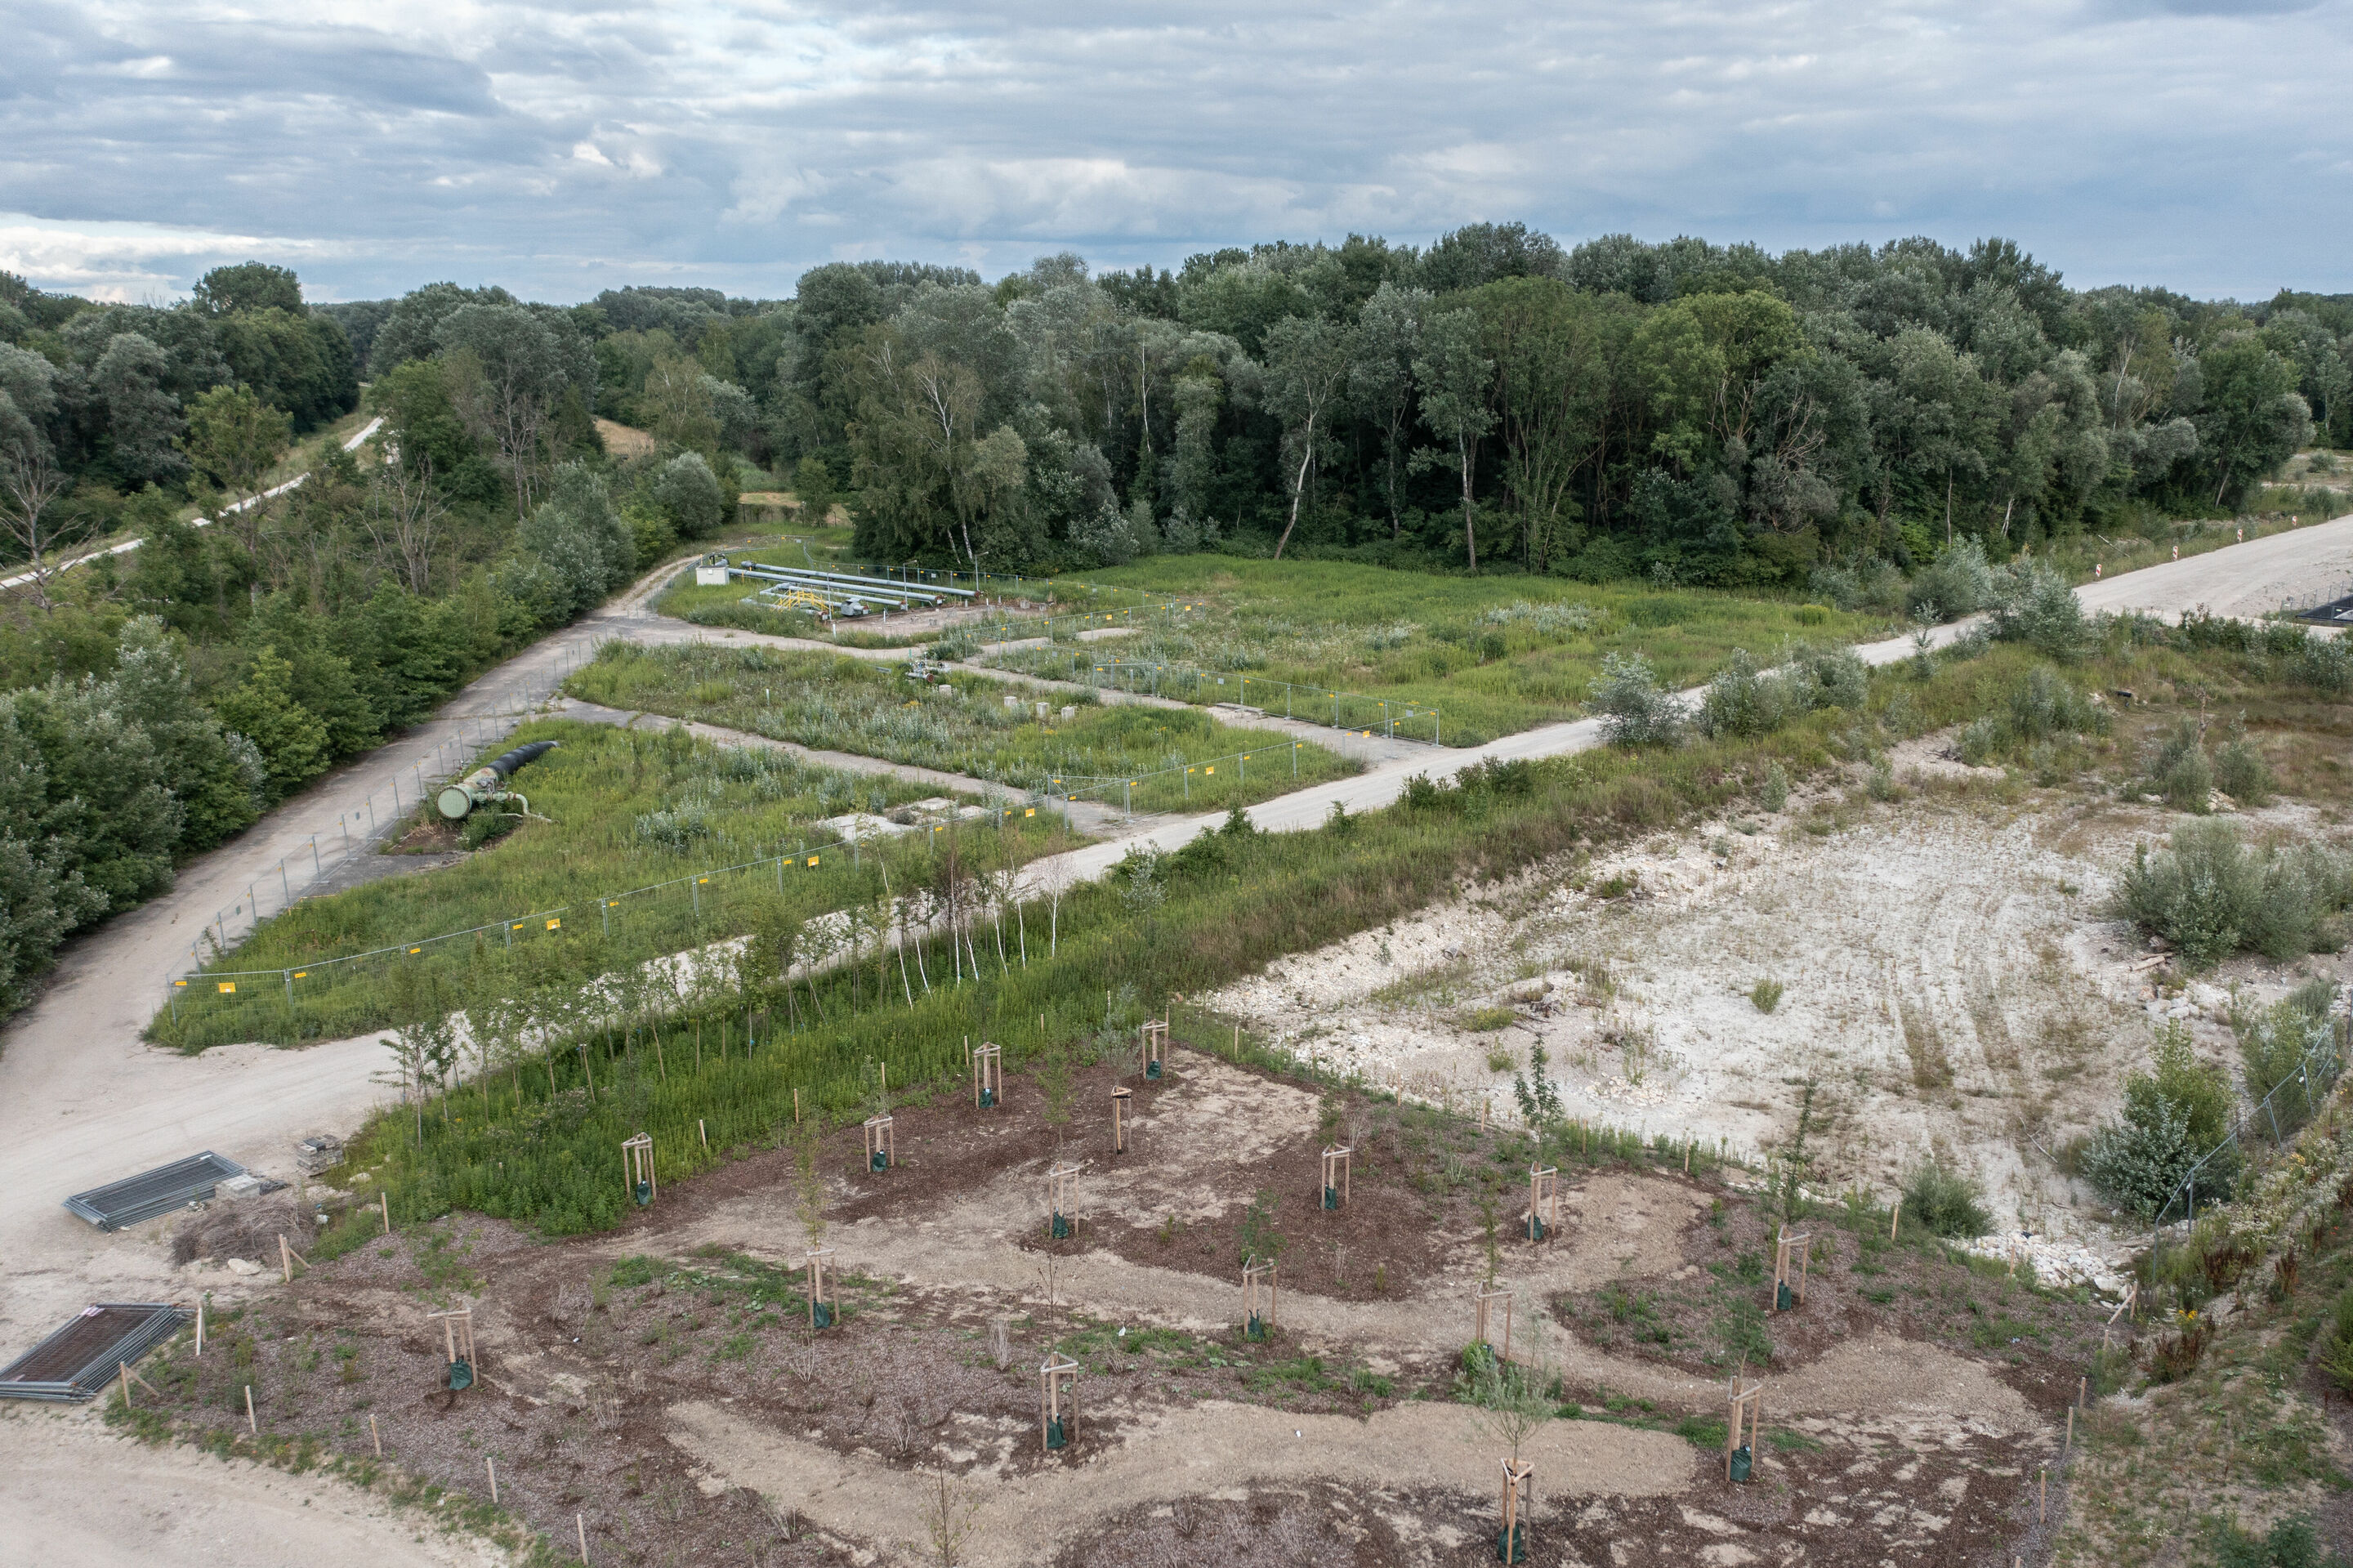 75 Hektar Zukunft – umweltschonende Bodensanierung und nachhaltiges Energiekonzept im Technologiepark IN-Campus